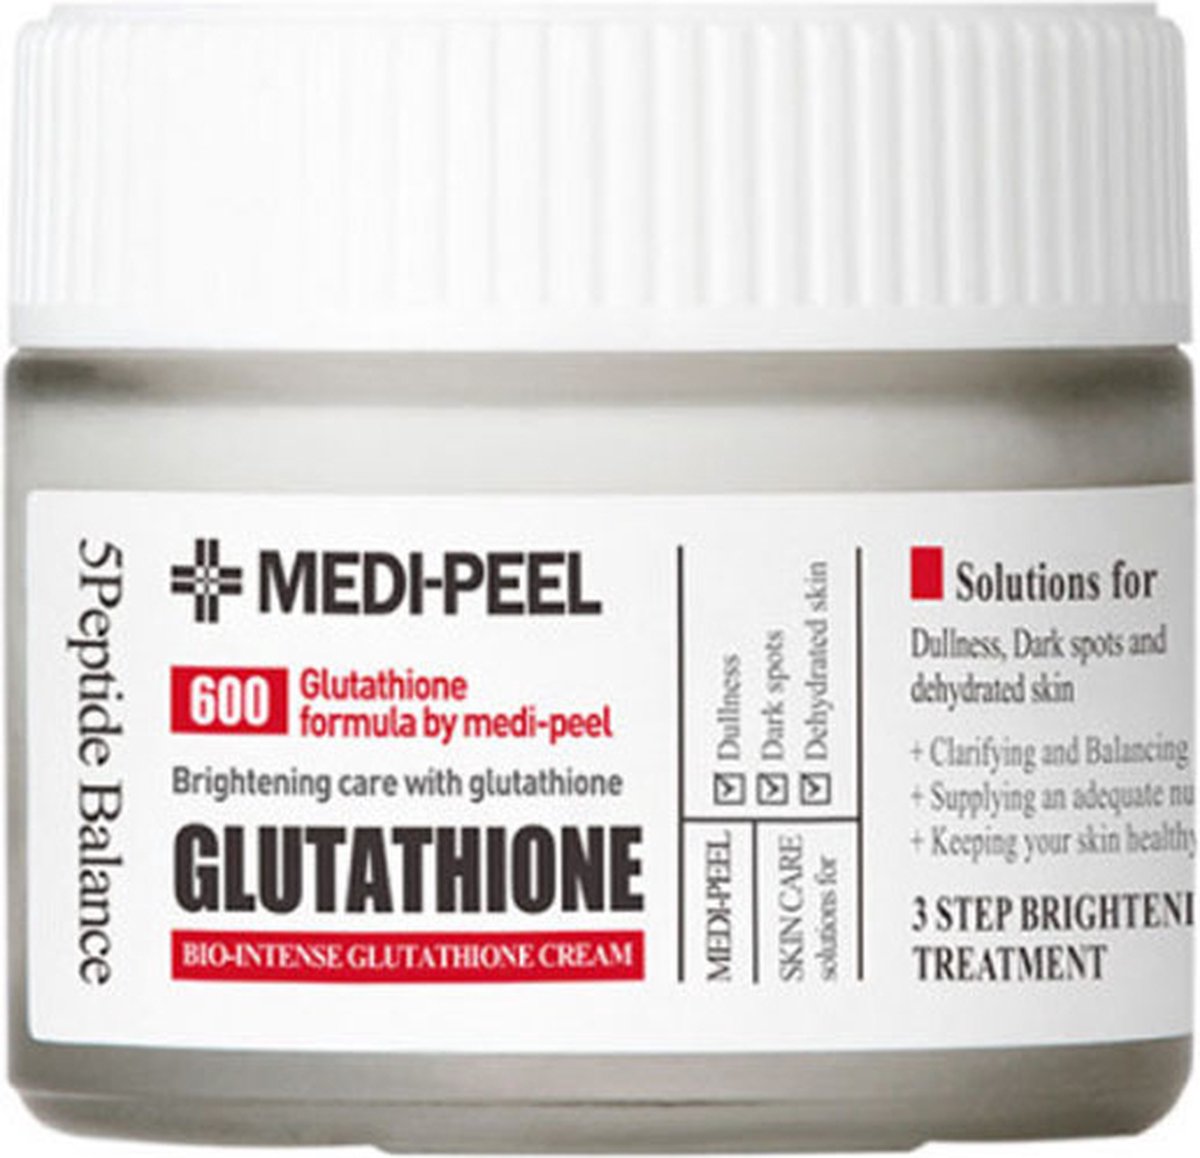 Medipeel Bio-Intense Glutathione White Cream 50 g 50g